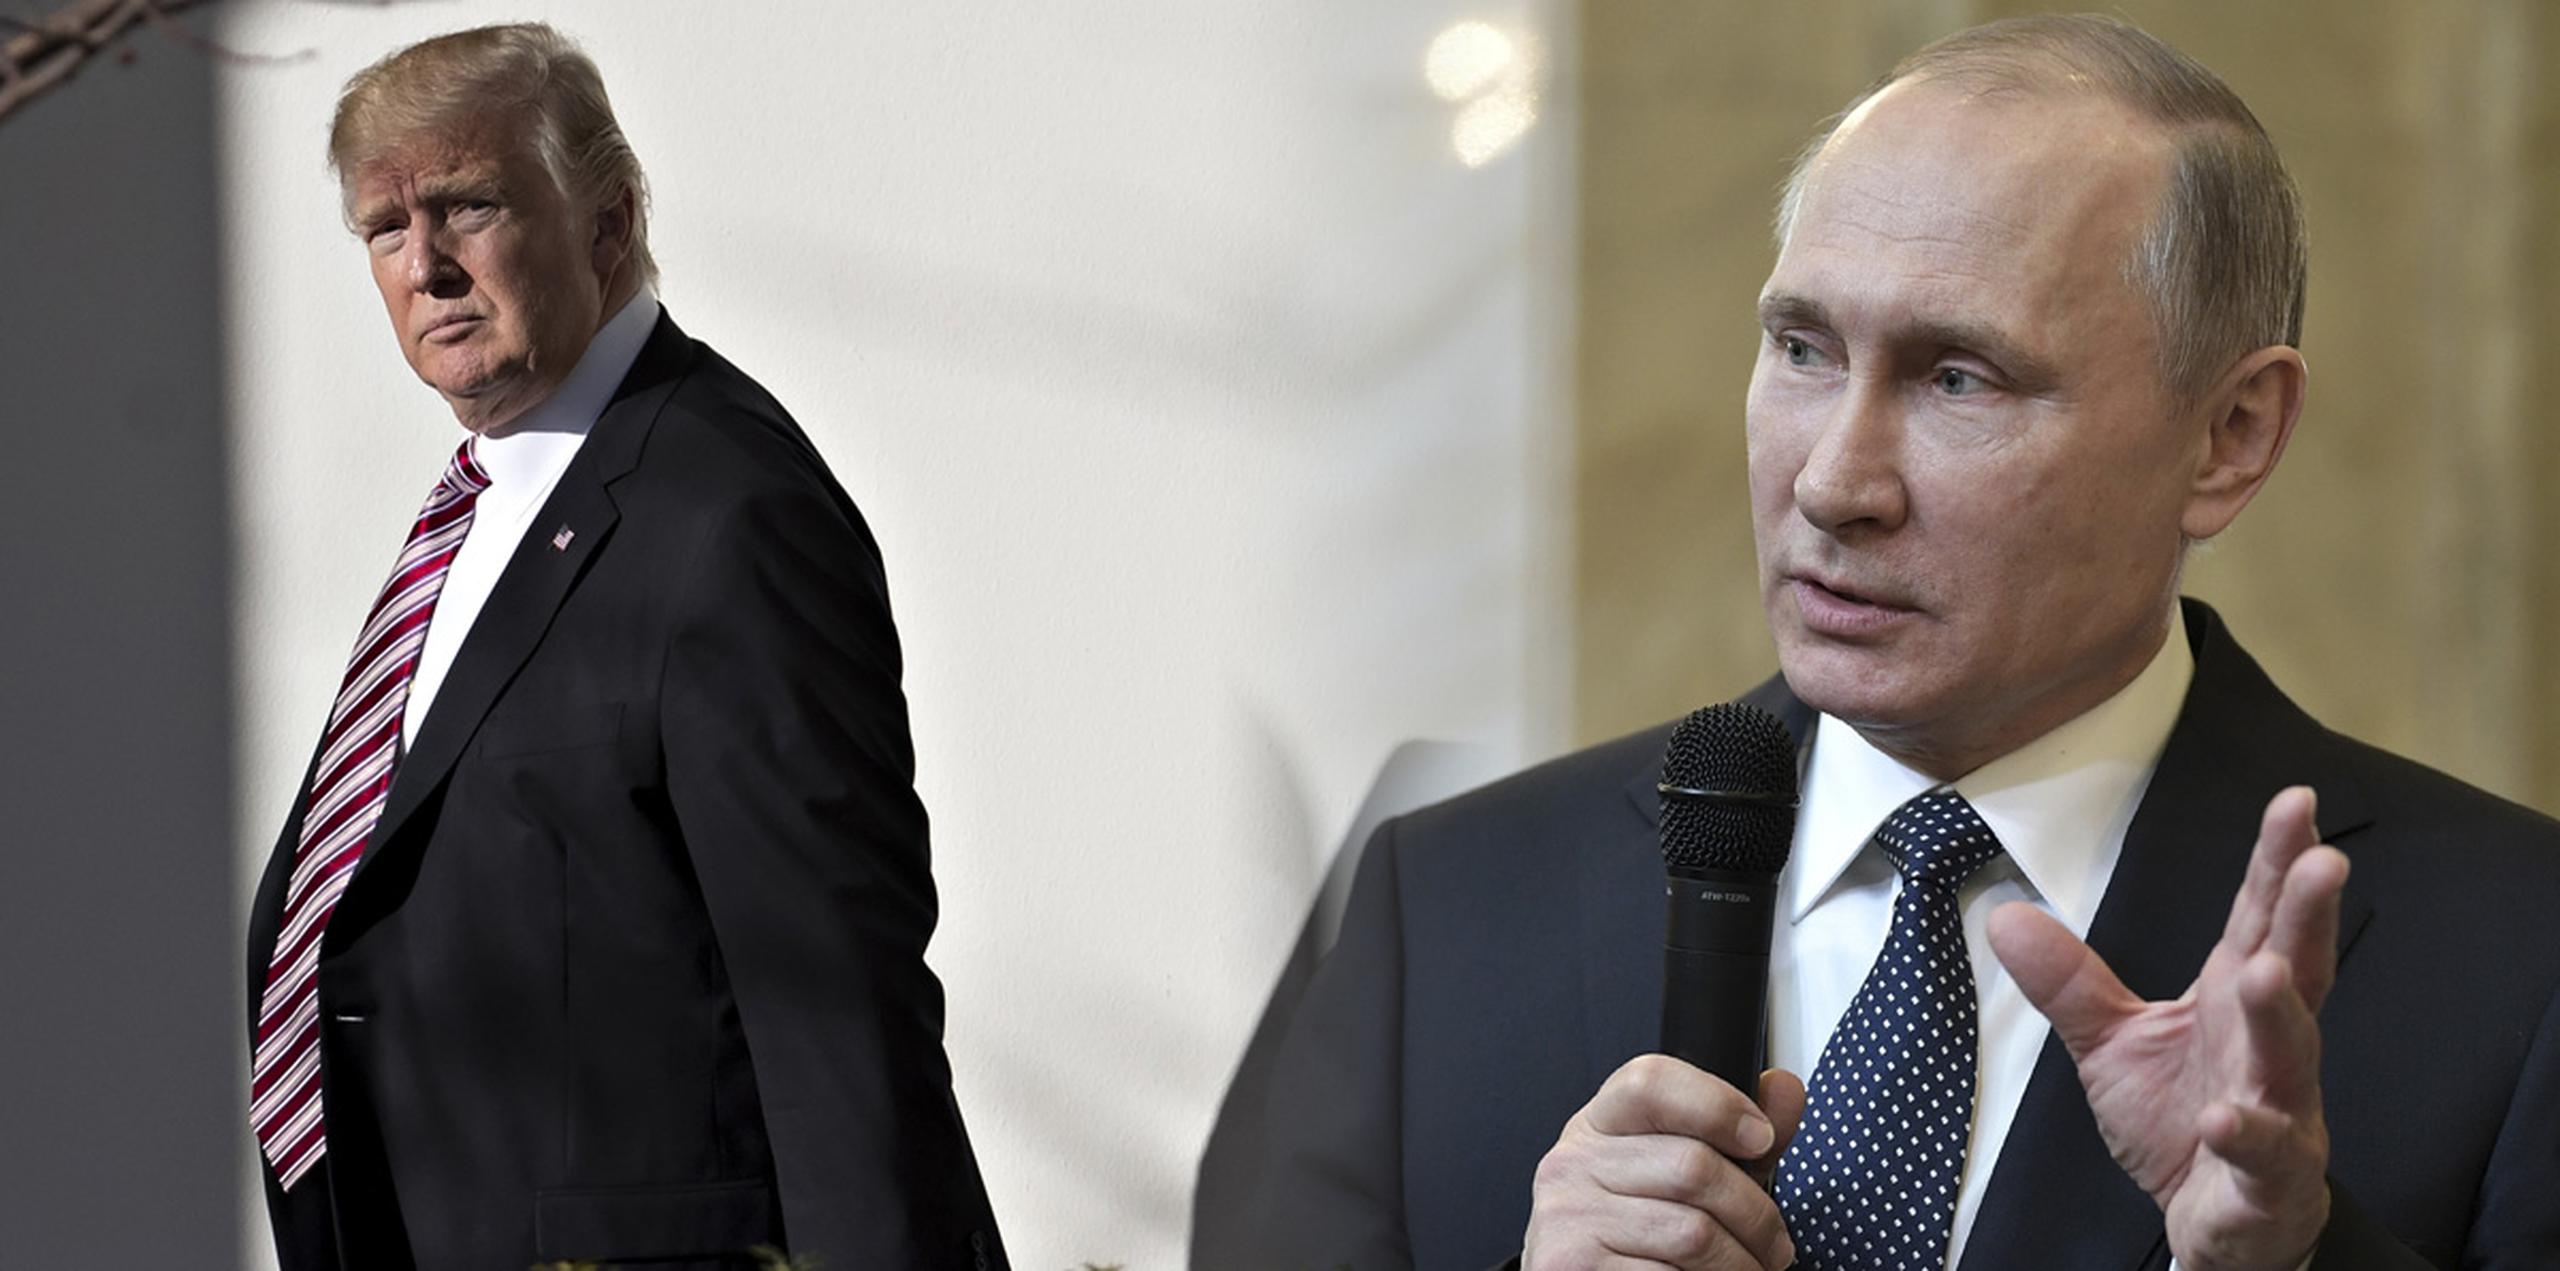 El Kremlin ha recibido de forma positiva las promesas de Trump de reparar los lazos con Moscú, que alcanzaron su punto más bajo desde la Guerra Fría por la crisis de Ucrania, la guerra en Siria y las acusaciones de interferencias rusas en las elecciones de Estados Unidos.  (AP)